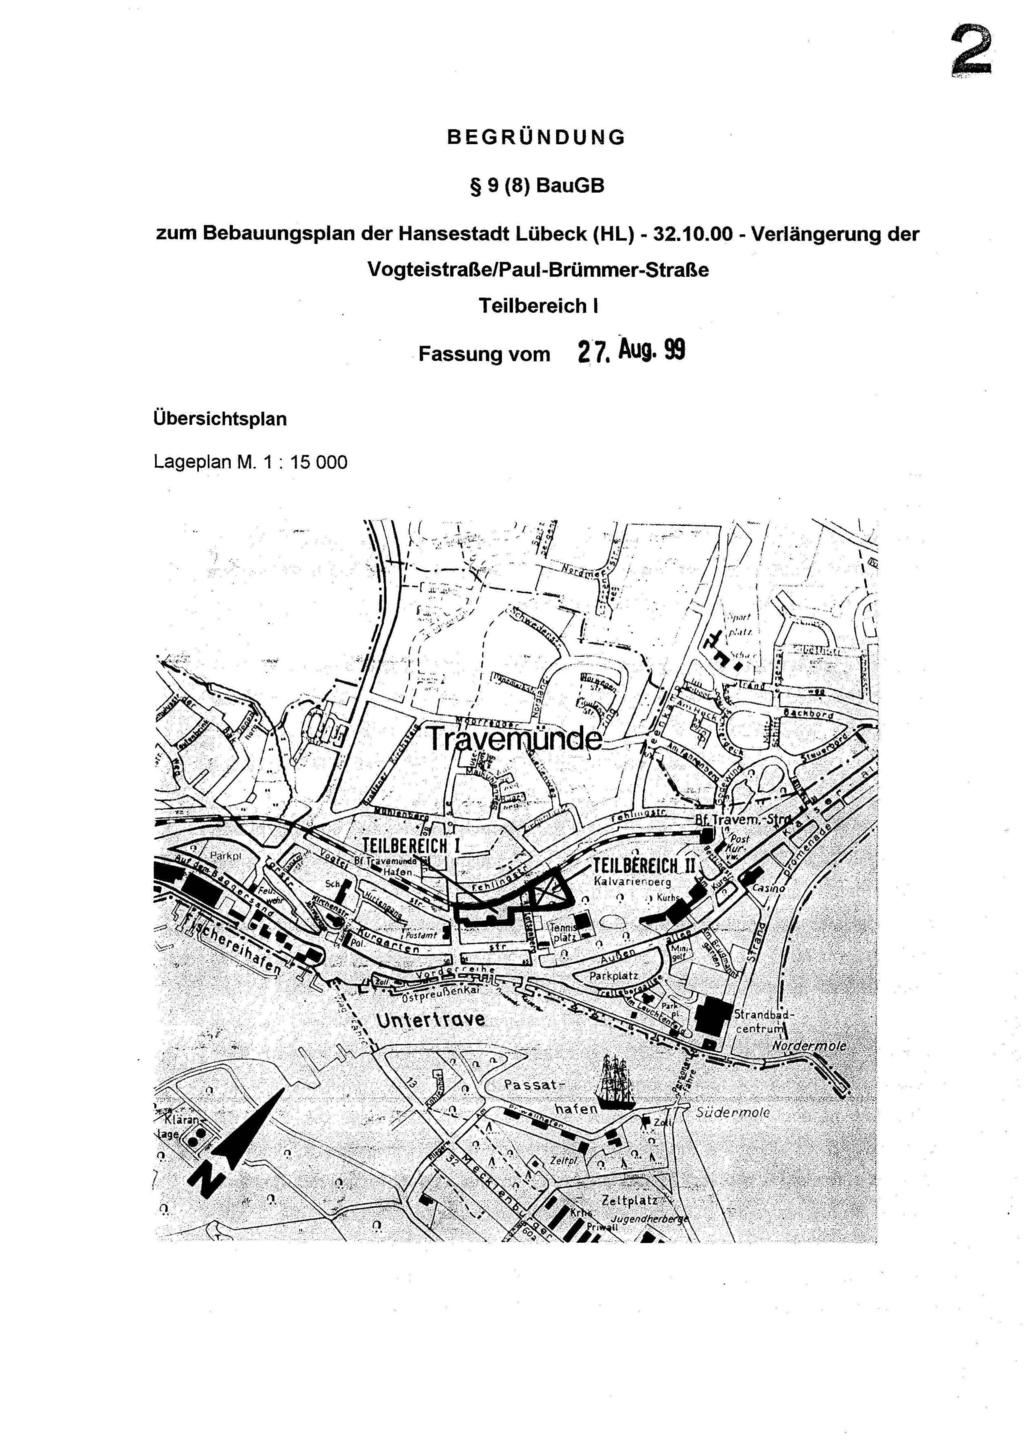 2 BEGRÜNDUNG 9 (8) BauGB zum Bebauungsplan der Hansestadt Lübeck (HL)- 32.10.